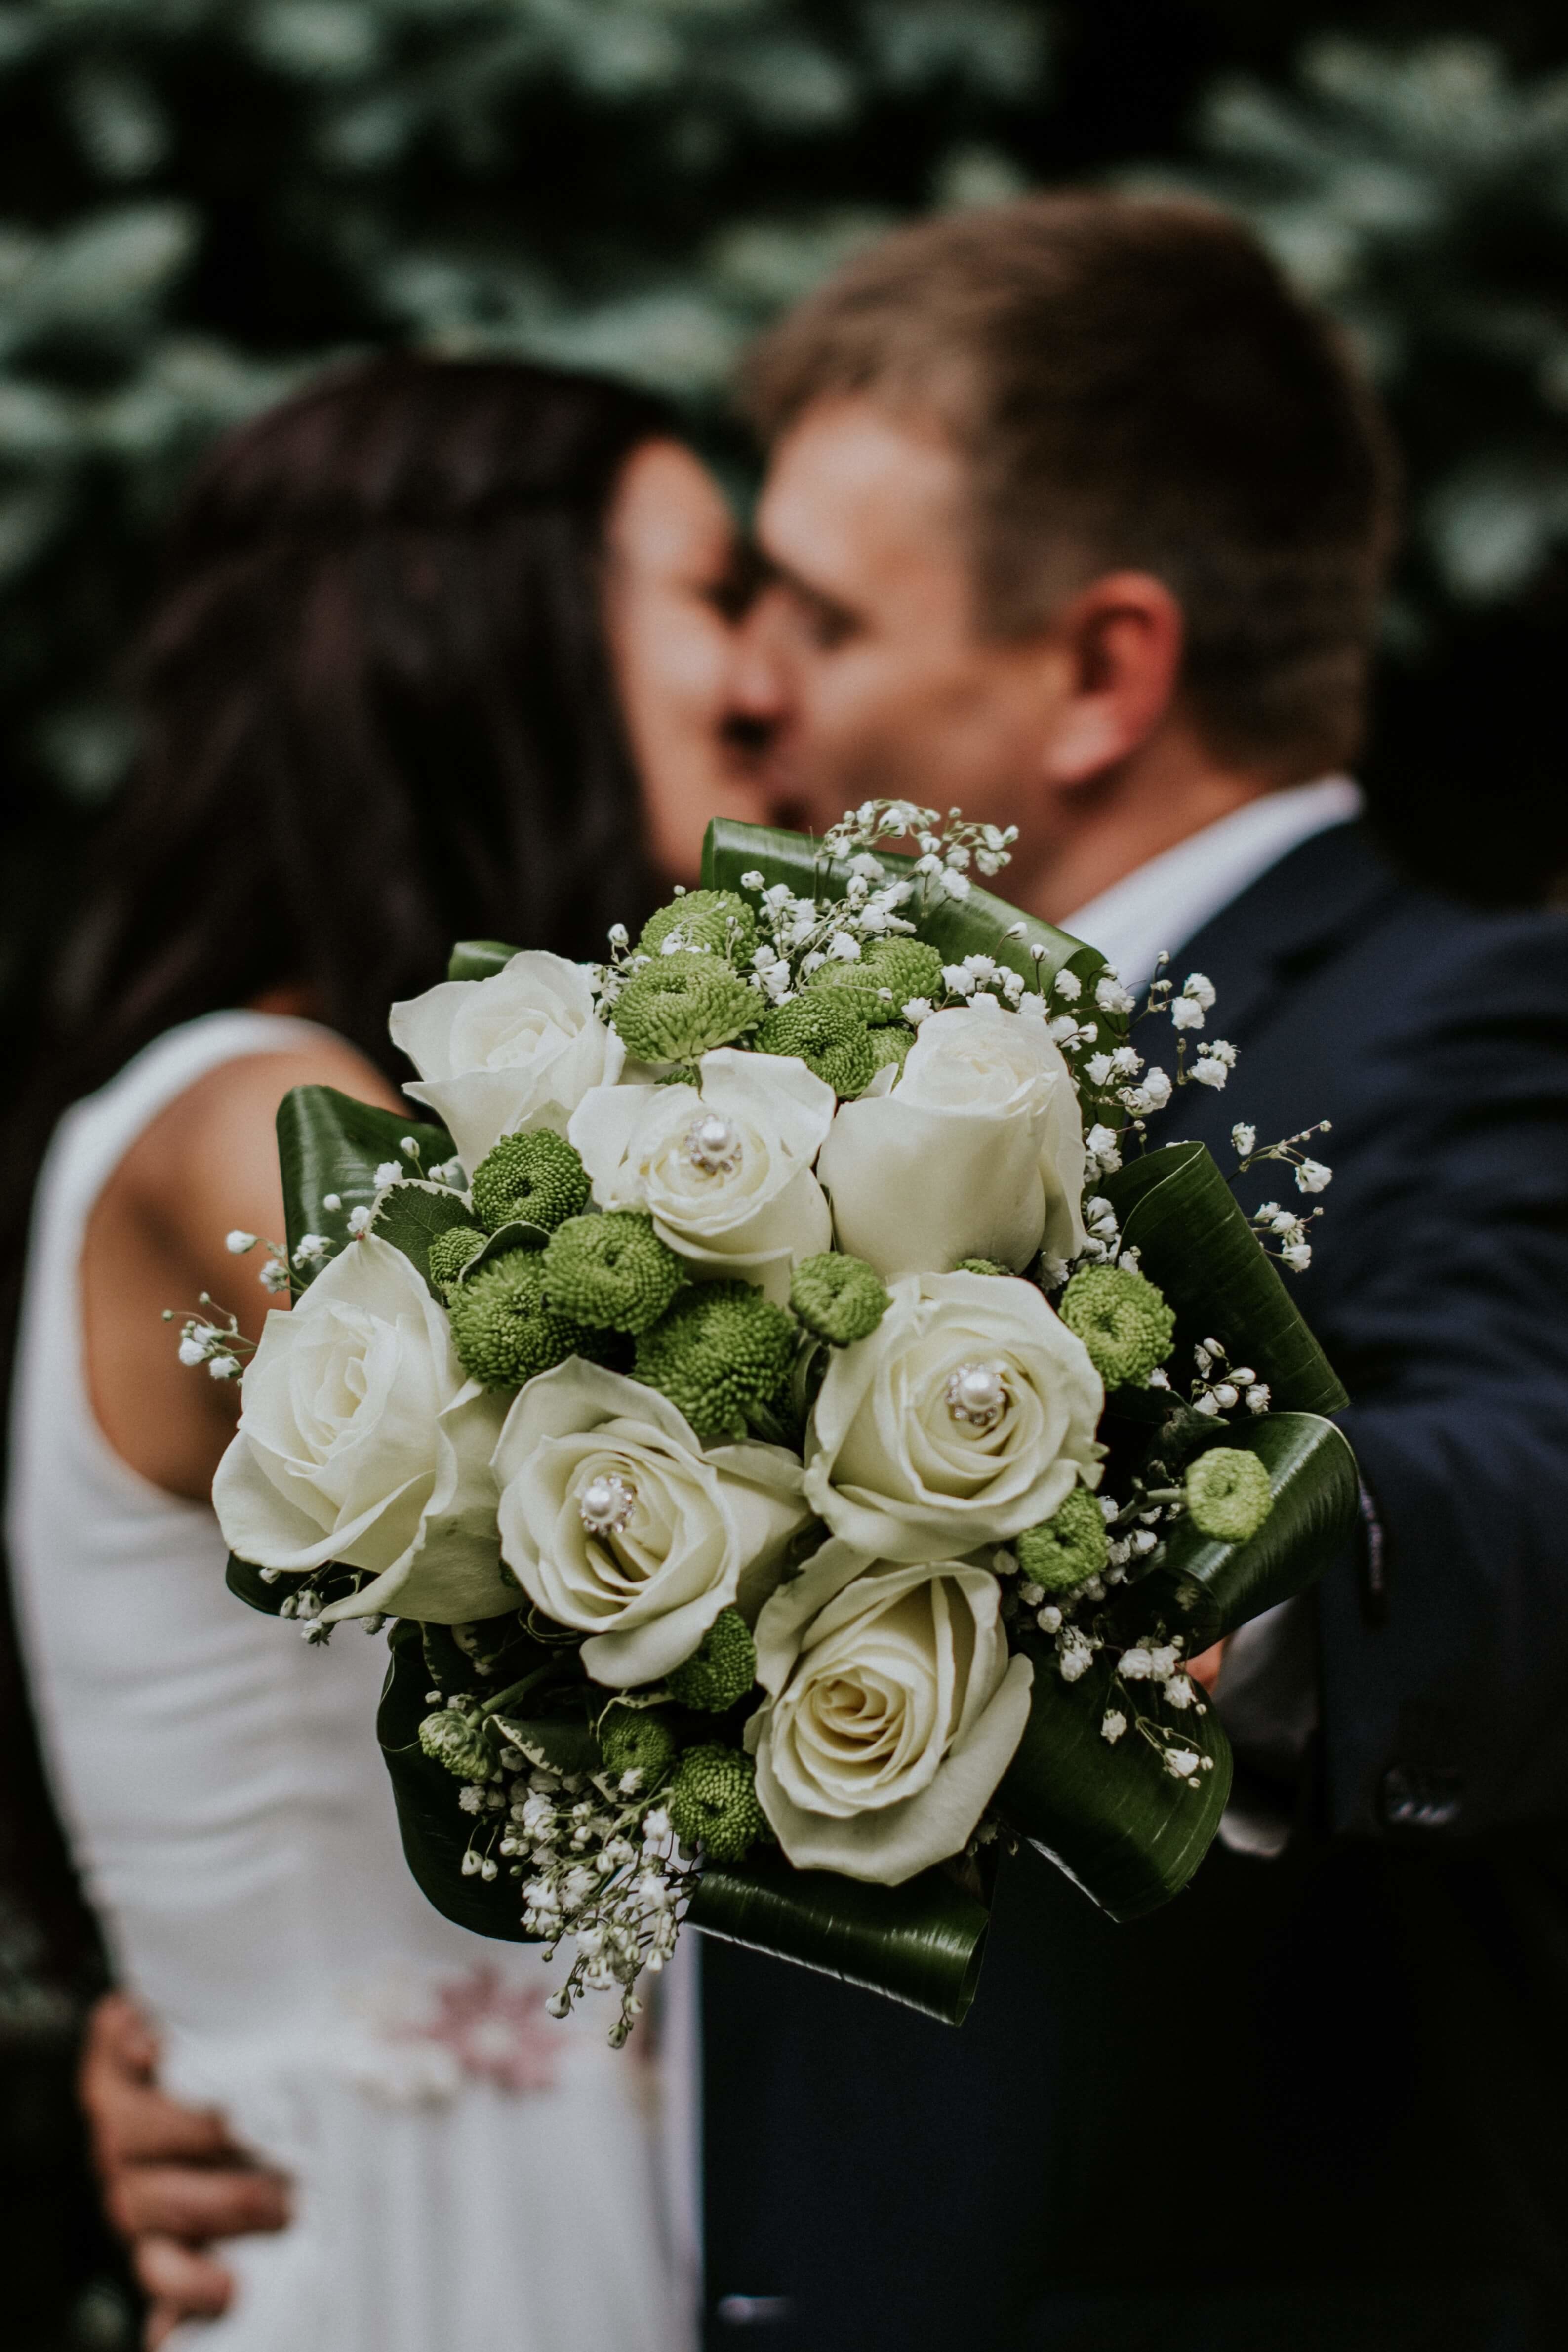 Brautpaar mit Blumenstrauß